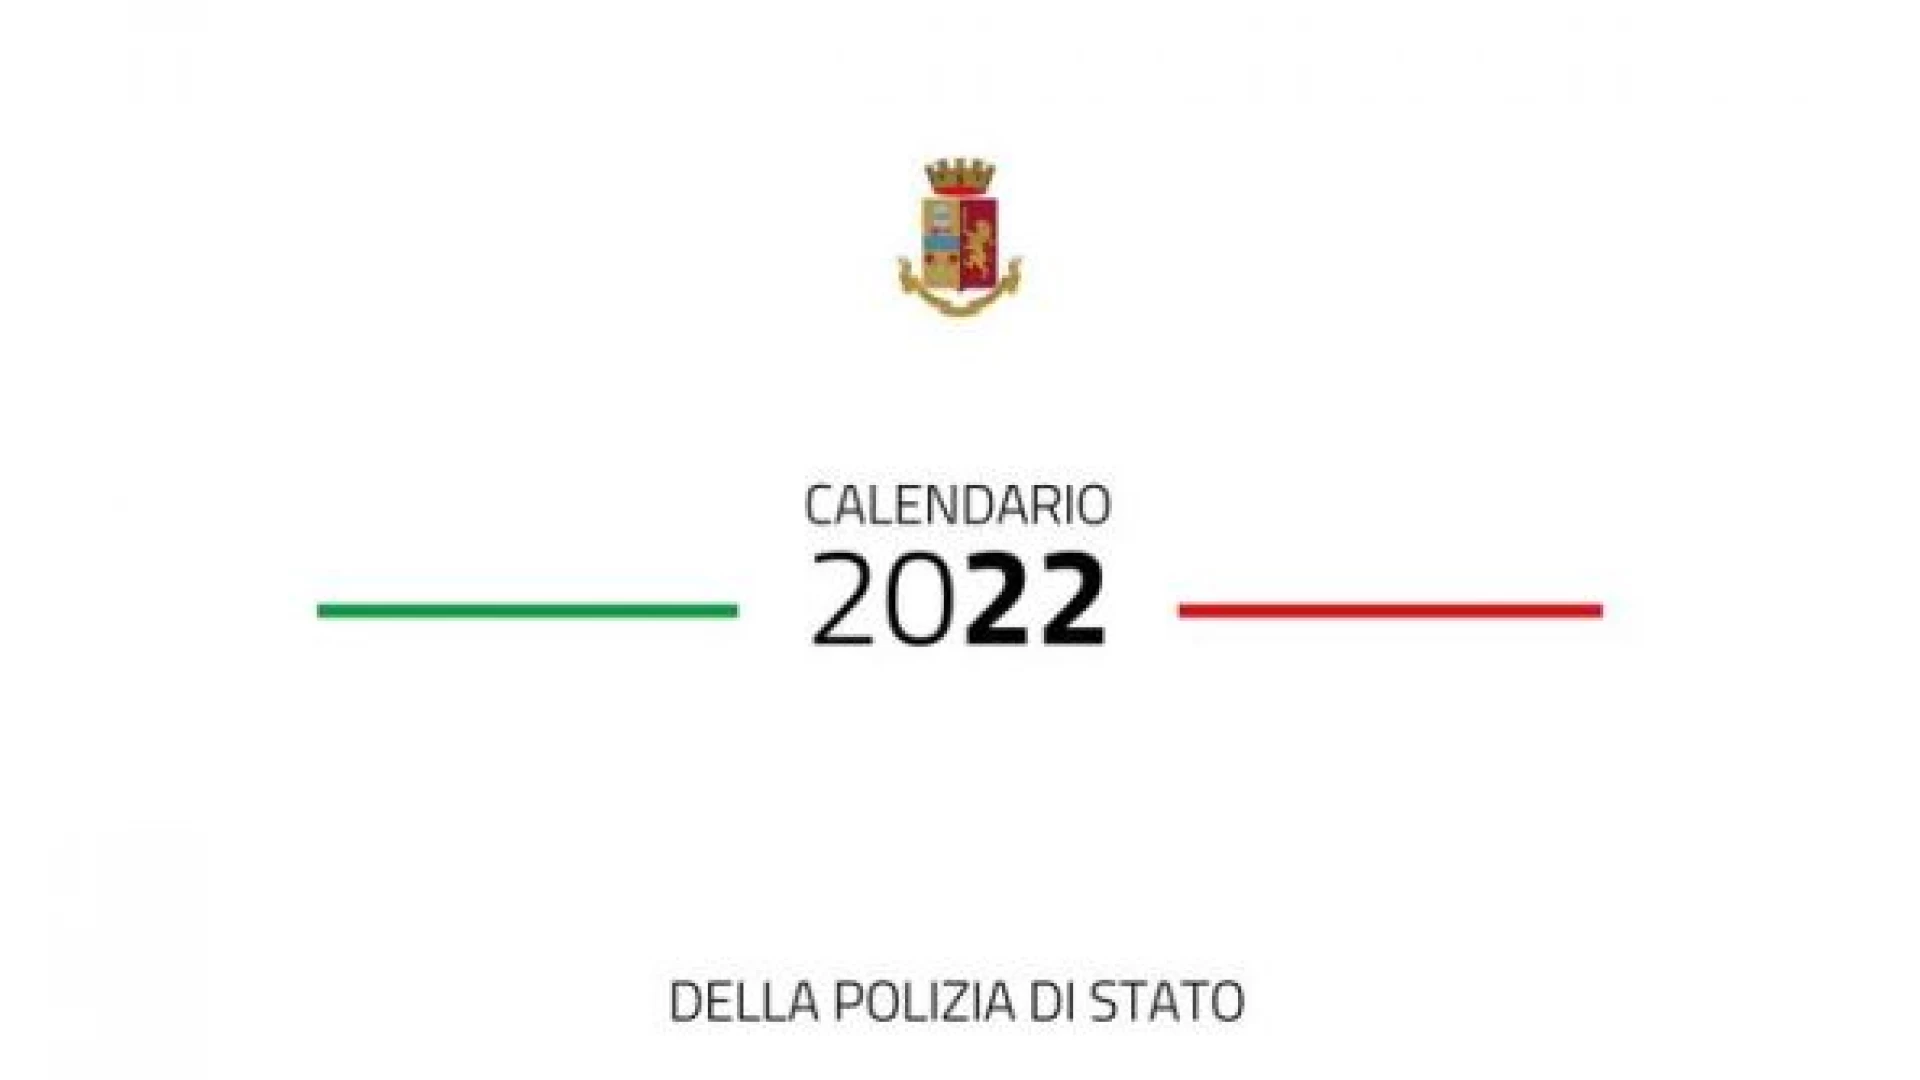 Polizia di Stato: il calendario 2022 si presenta in tutta Italia